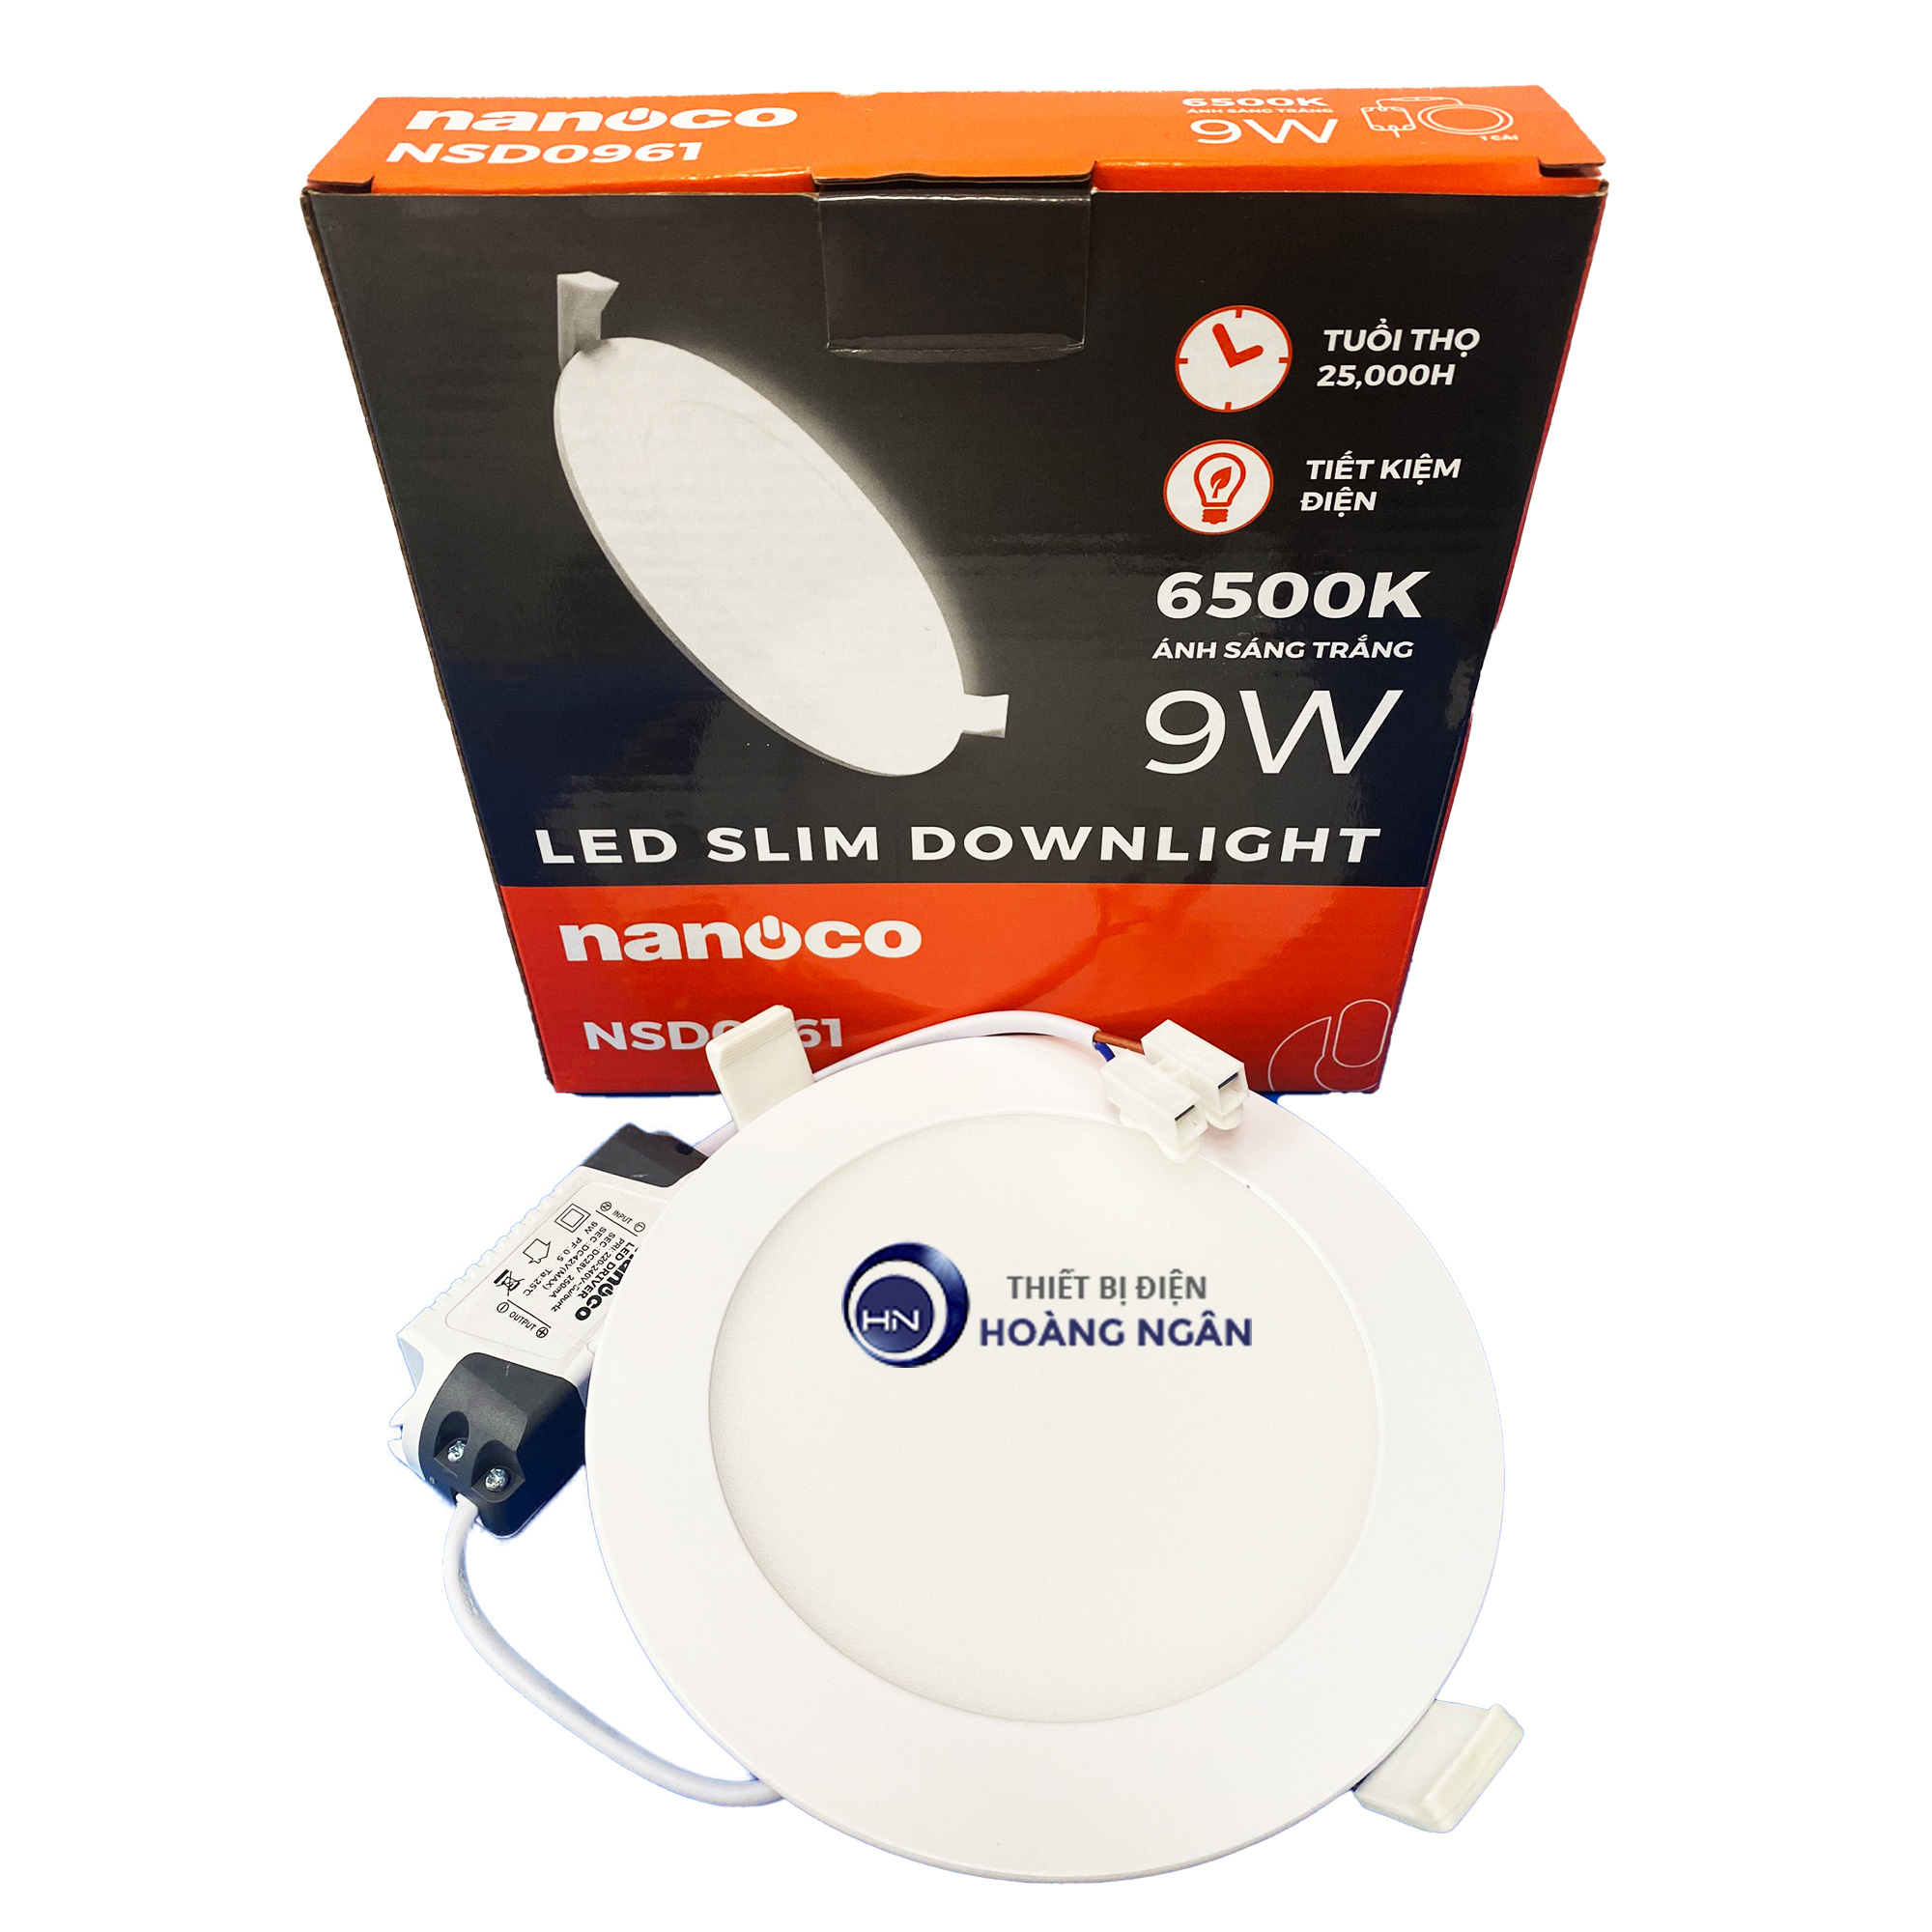 Đèn LED Slim Downlight siêu mỏng Nanoco